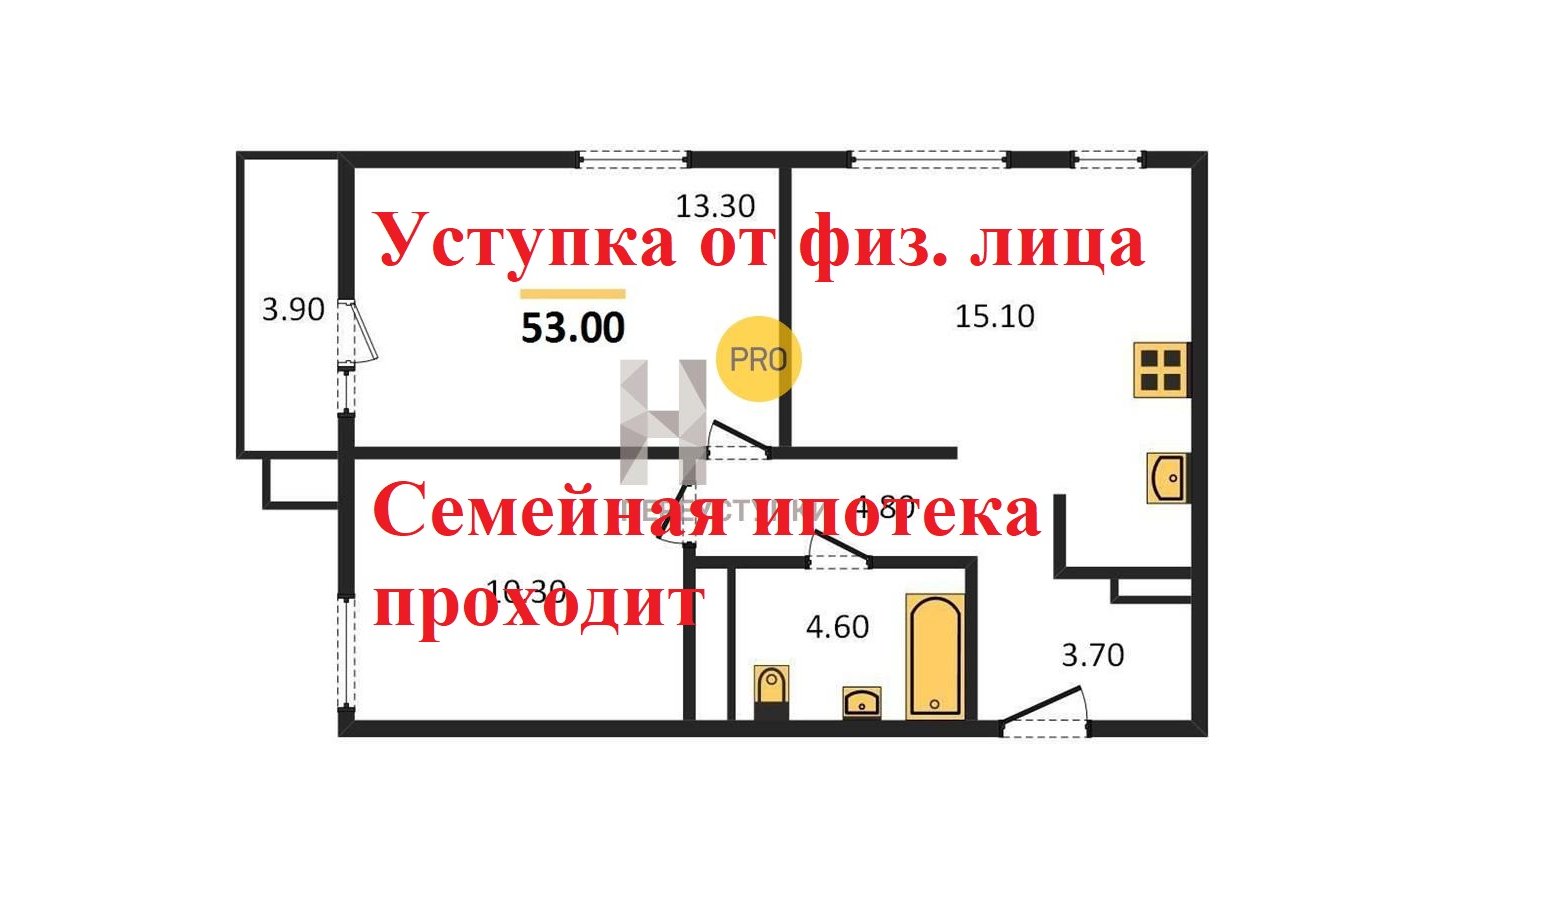 Продам 2 комнатную квартиру в ЖК «Комос на Губкина» О КВАРТИРЕ:  • Отличная планировка, общая площадь 53 кв.м....